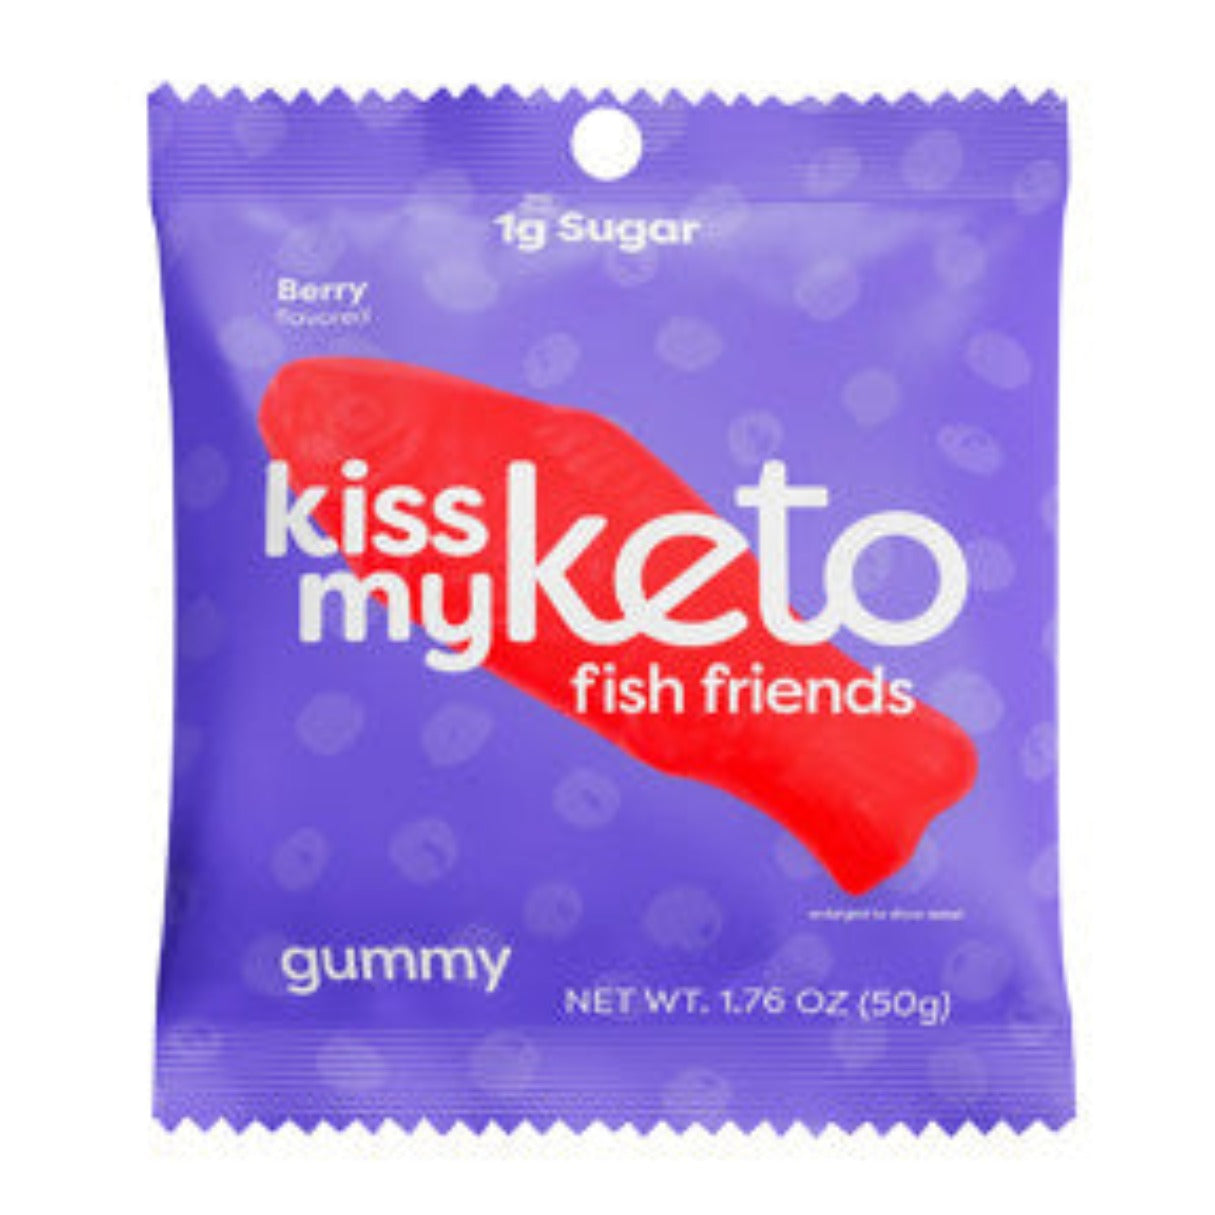 Kiss My Keto Fish Friends Gummies 1.76oz - 96ct